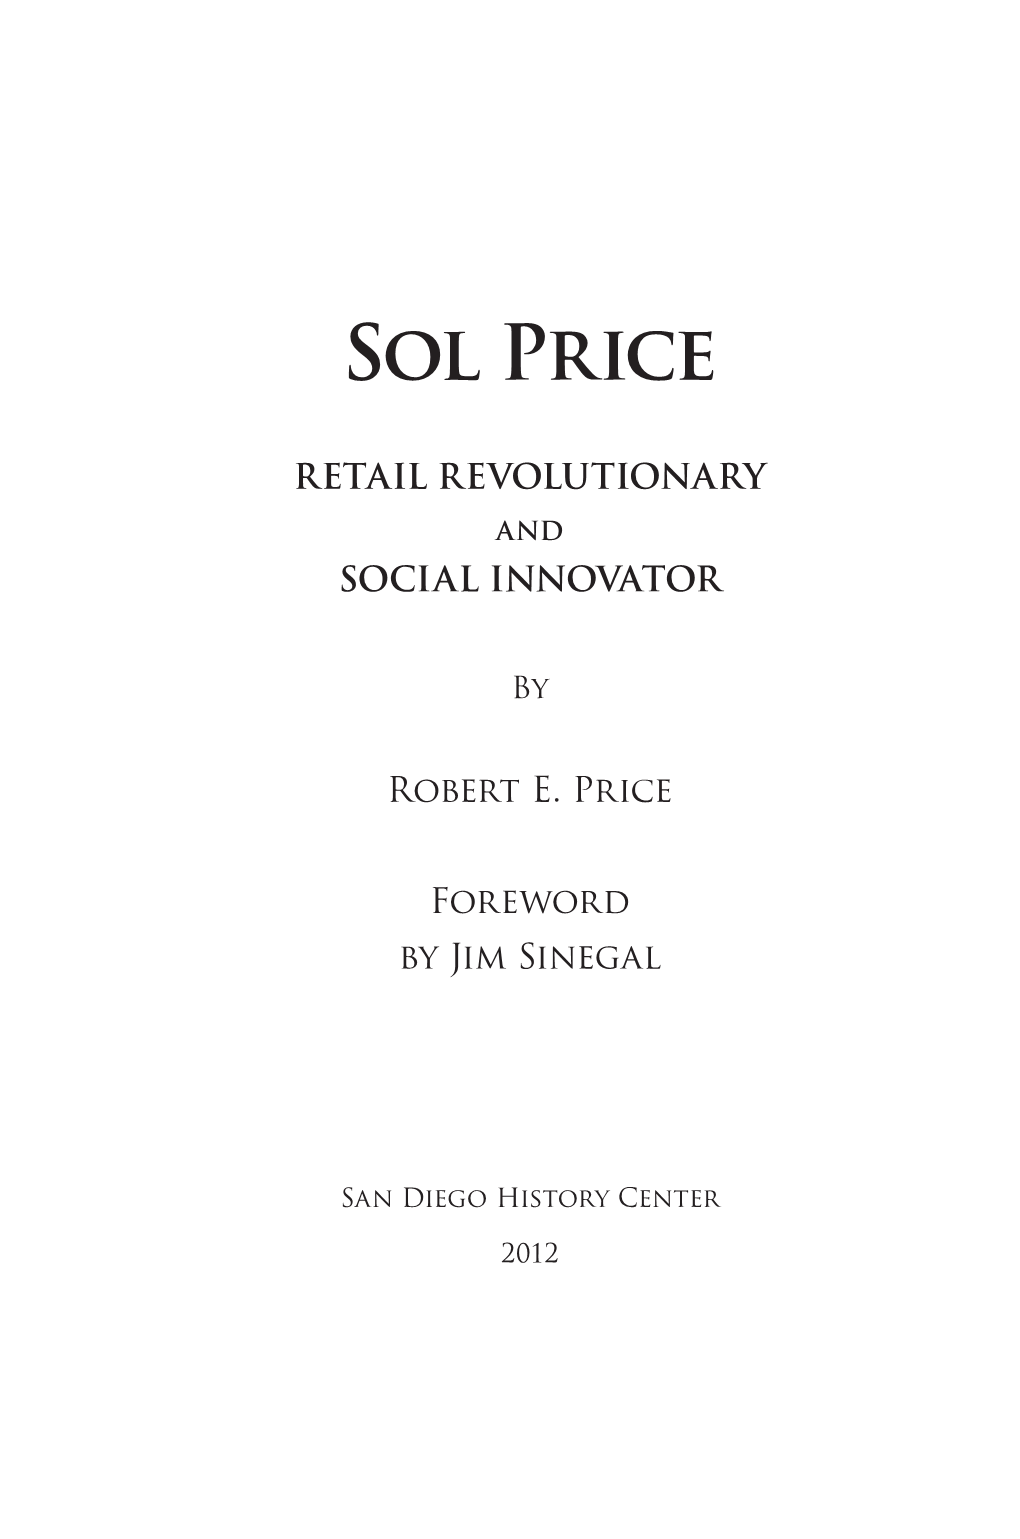 Sol Price Center for Social Innovation